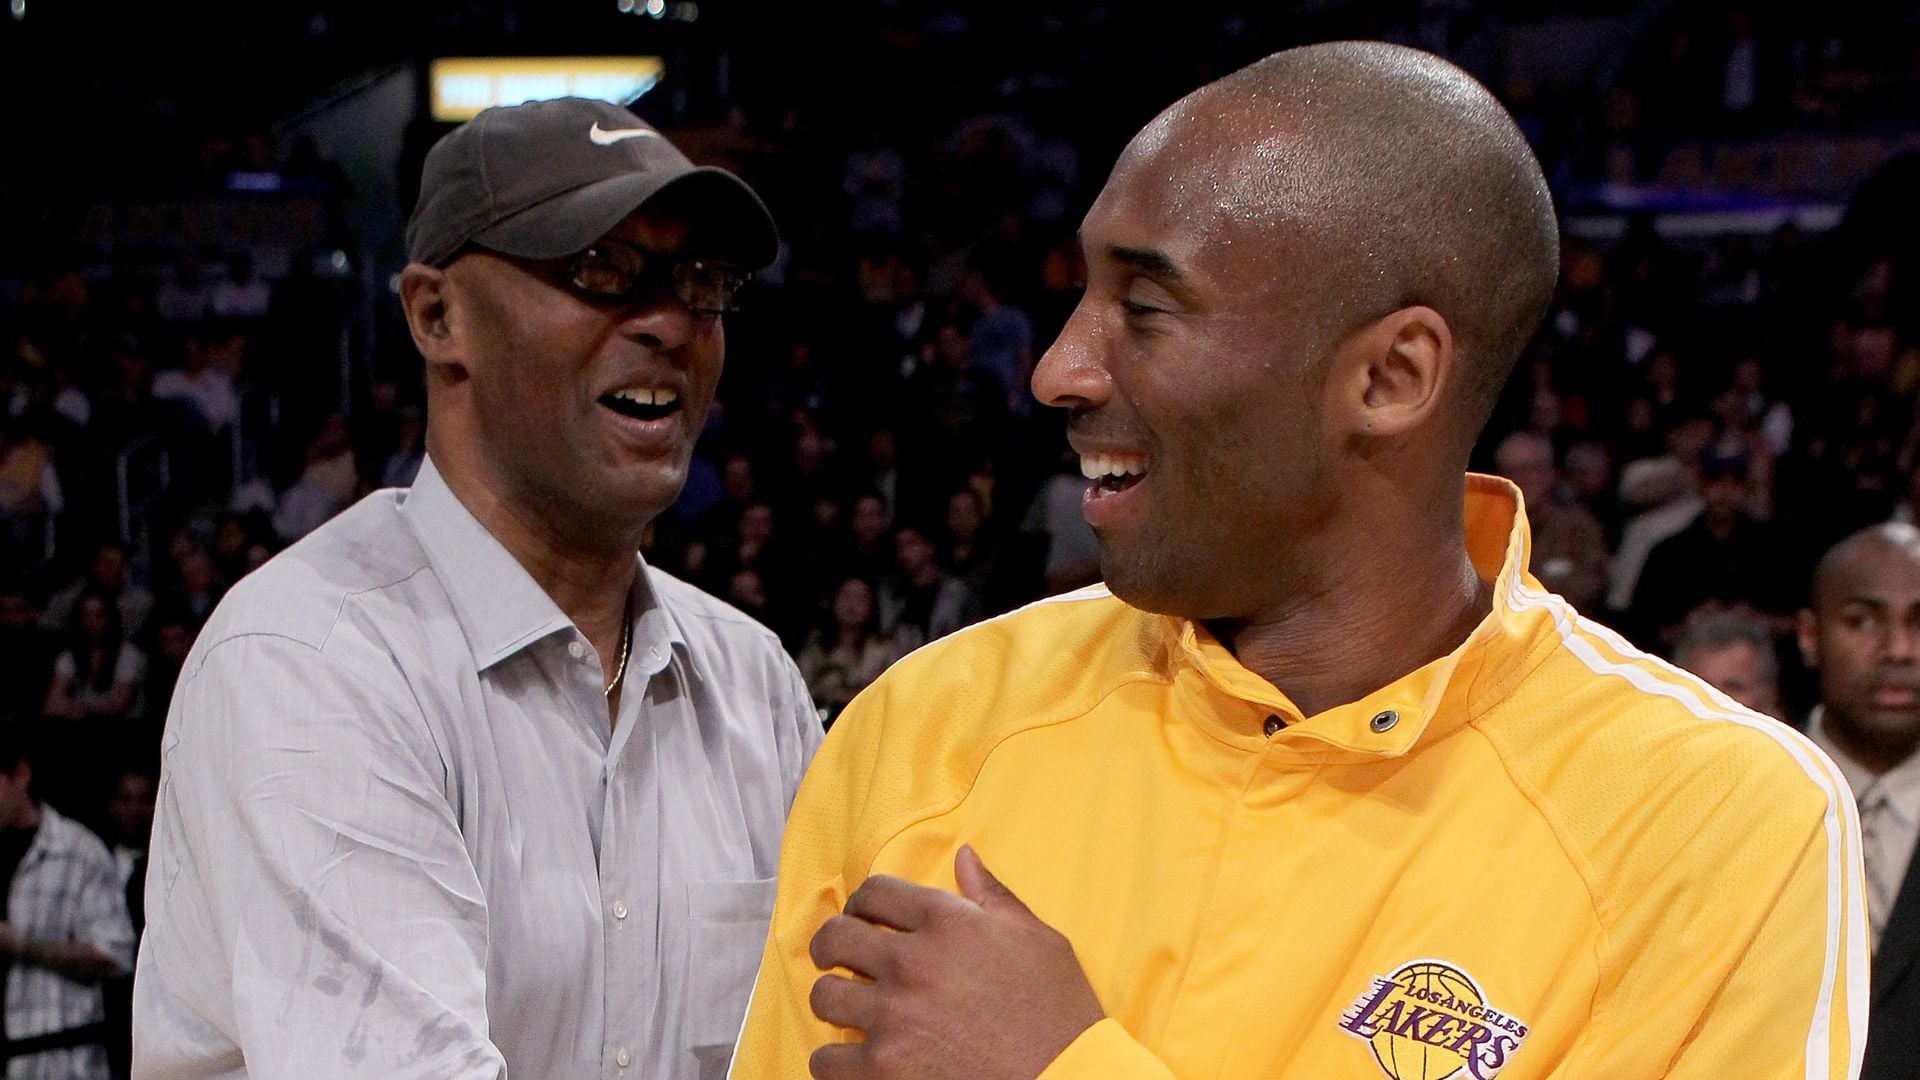 Fallece el padre de Kobe Bryant a los 69 años